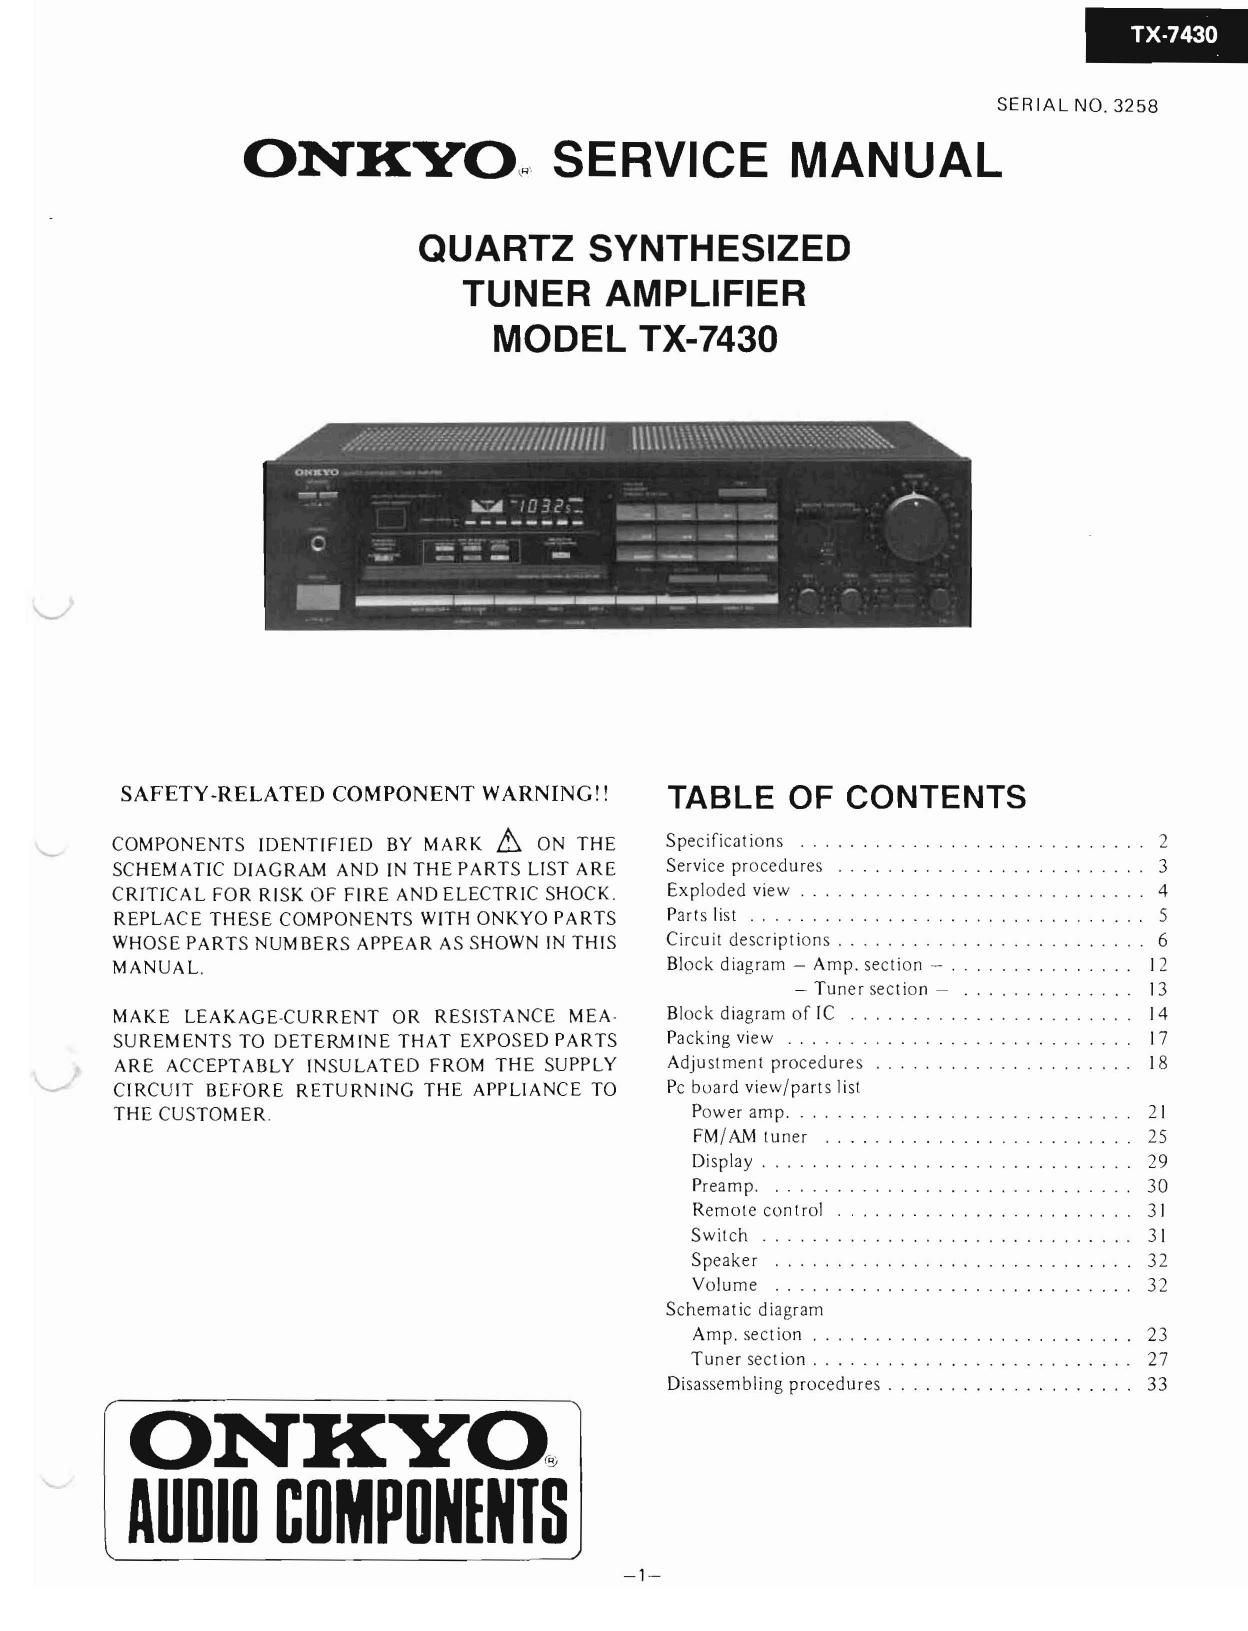 Onkyo TX 7430 Service Manual